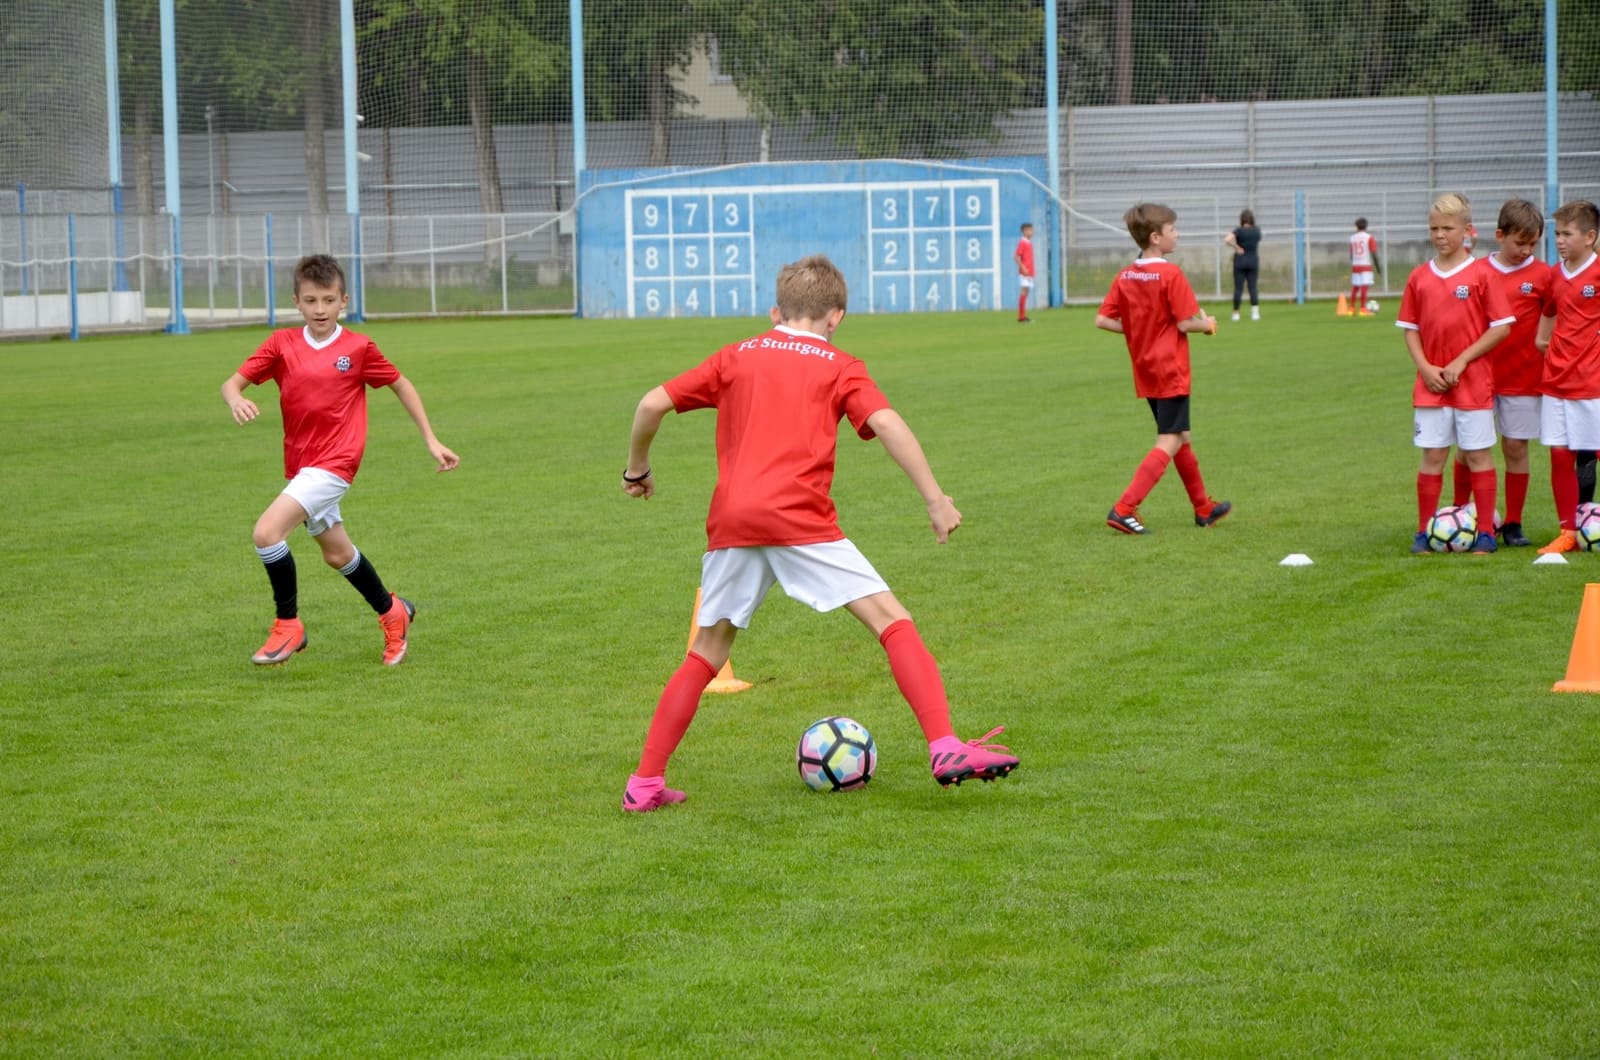 «FC Stuttgart - Кратово» – футбольный лагерь в Подмосковье, фото программы 7